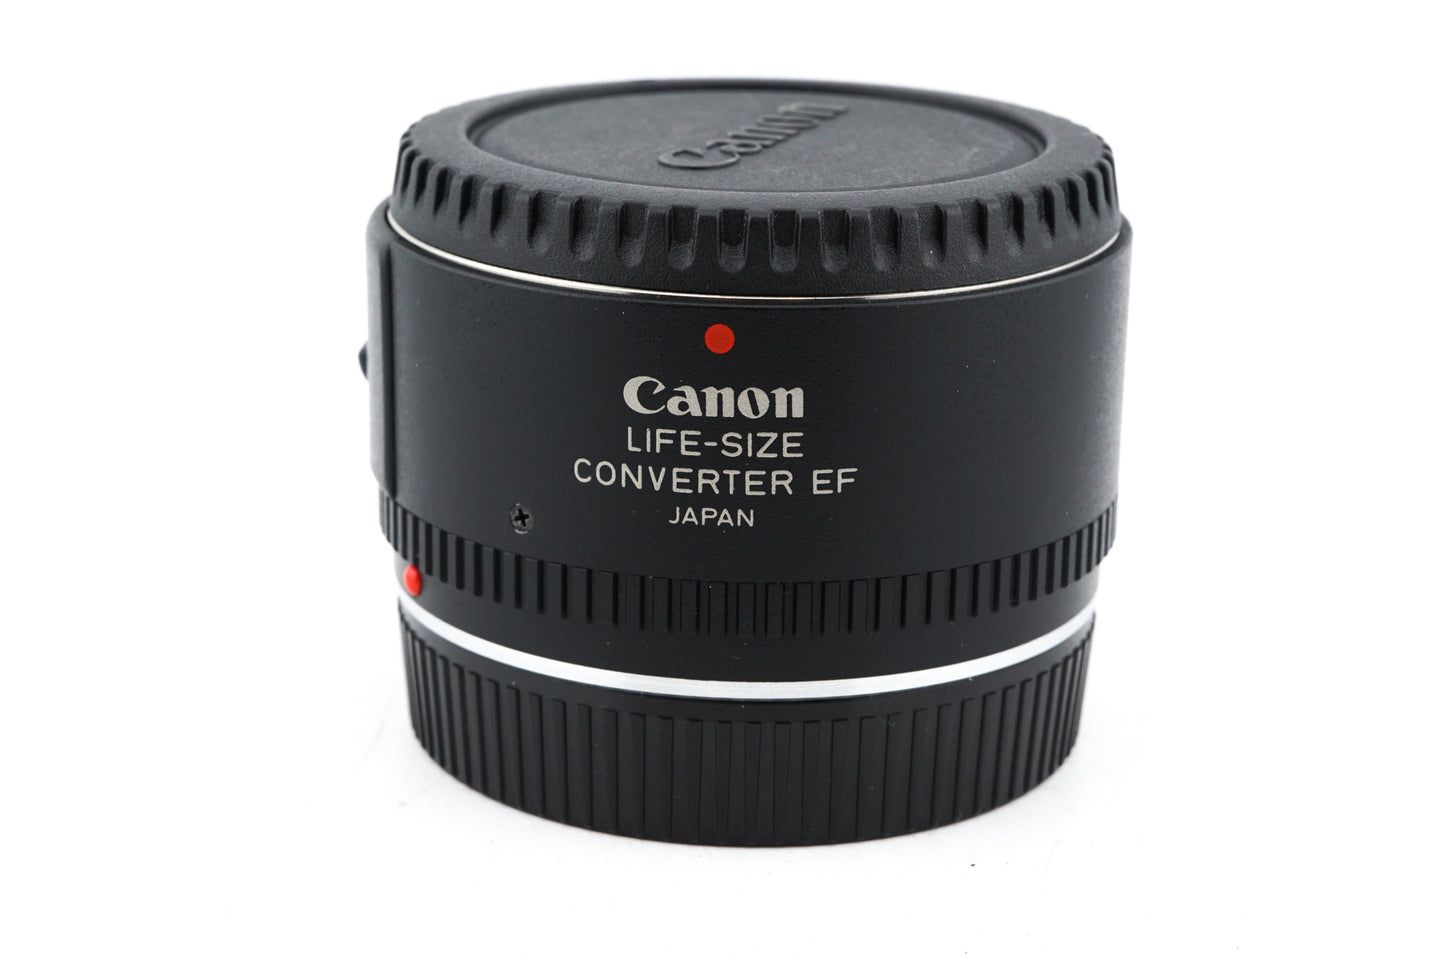 Canon Life-Size Converter EF - Accessory